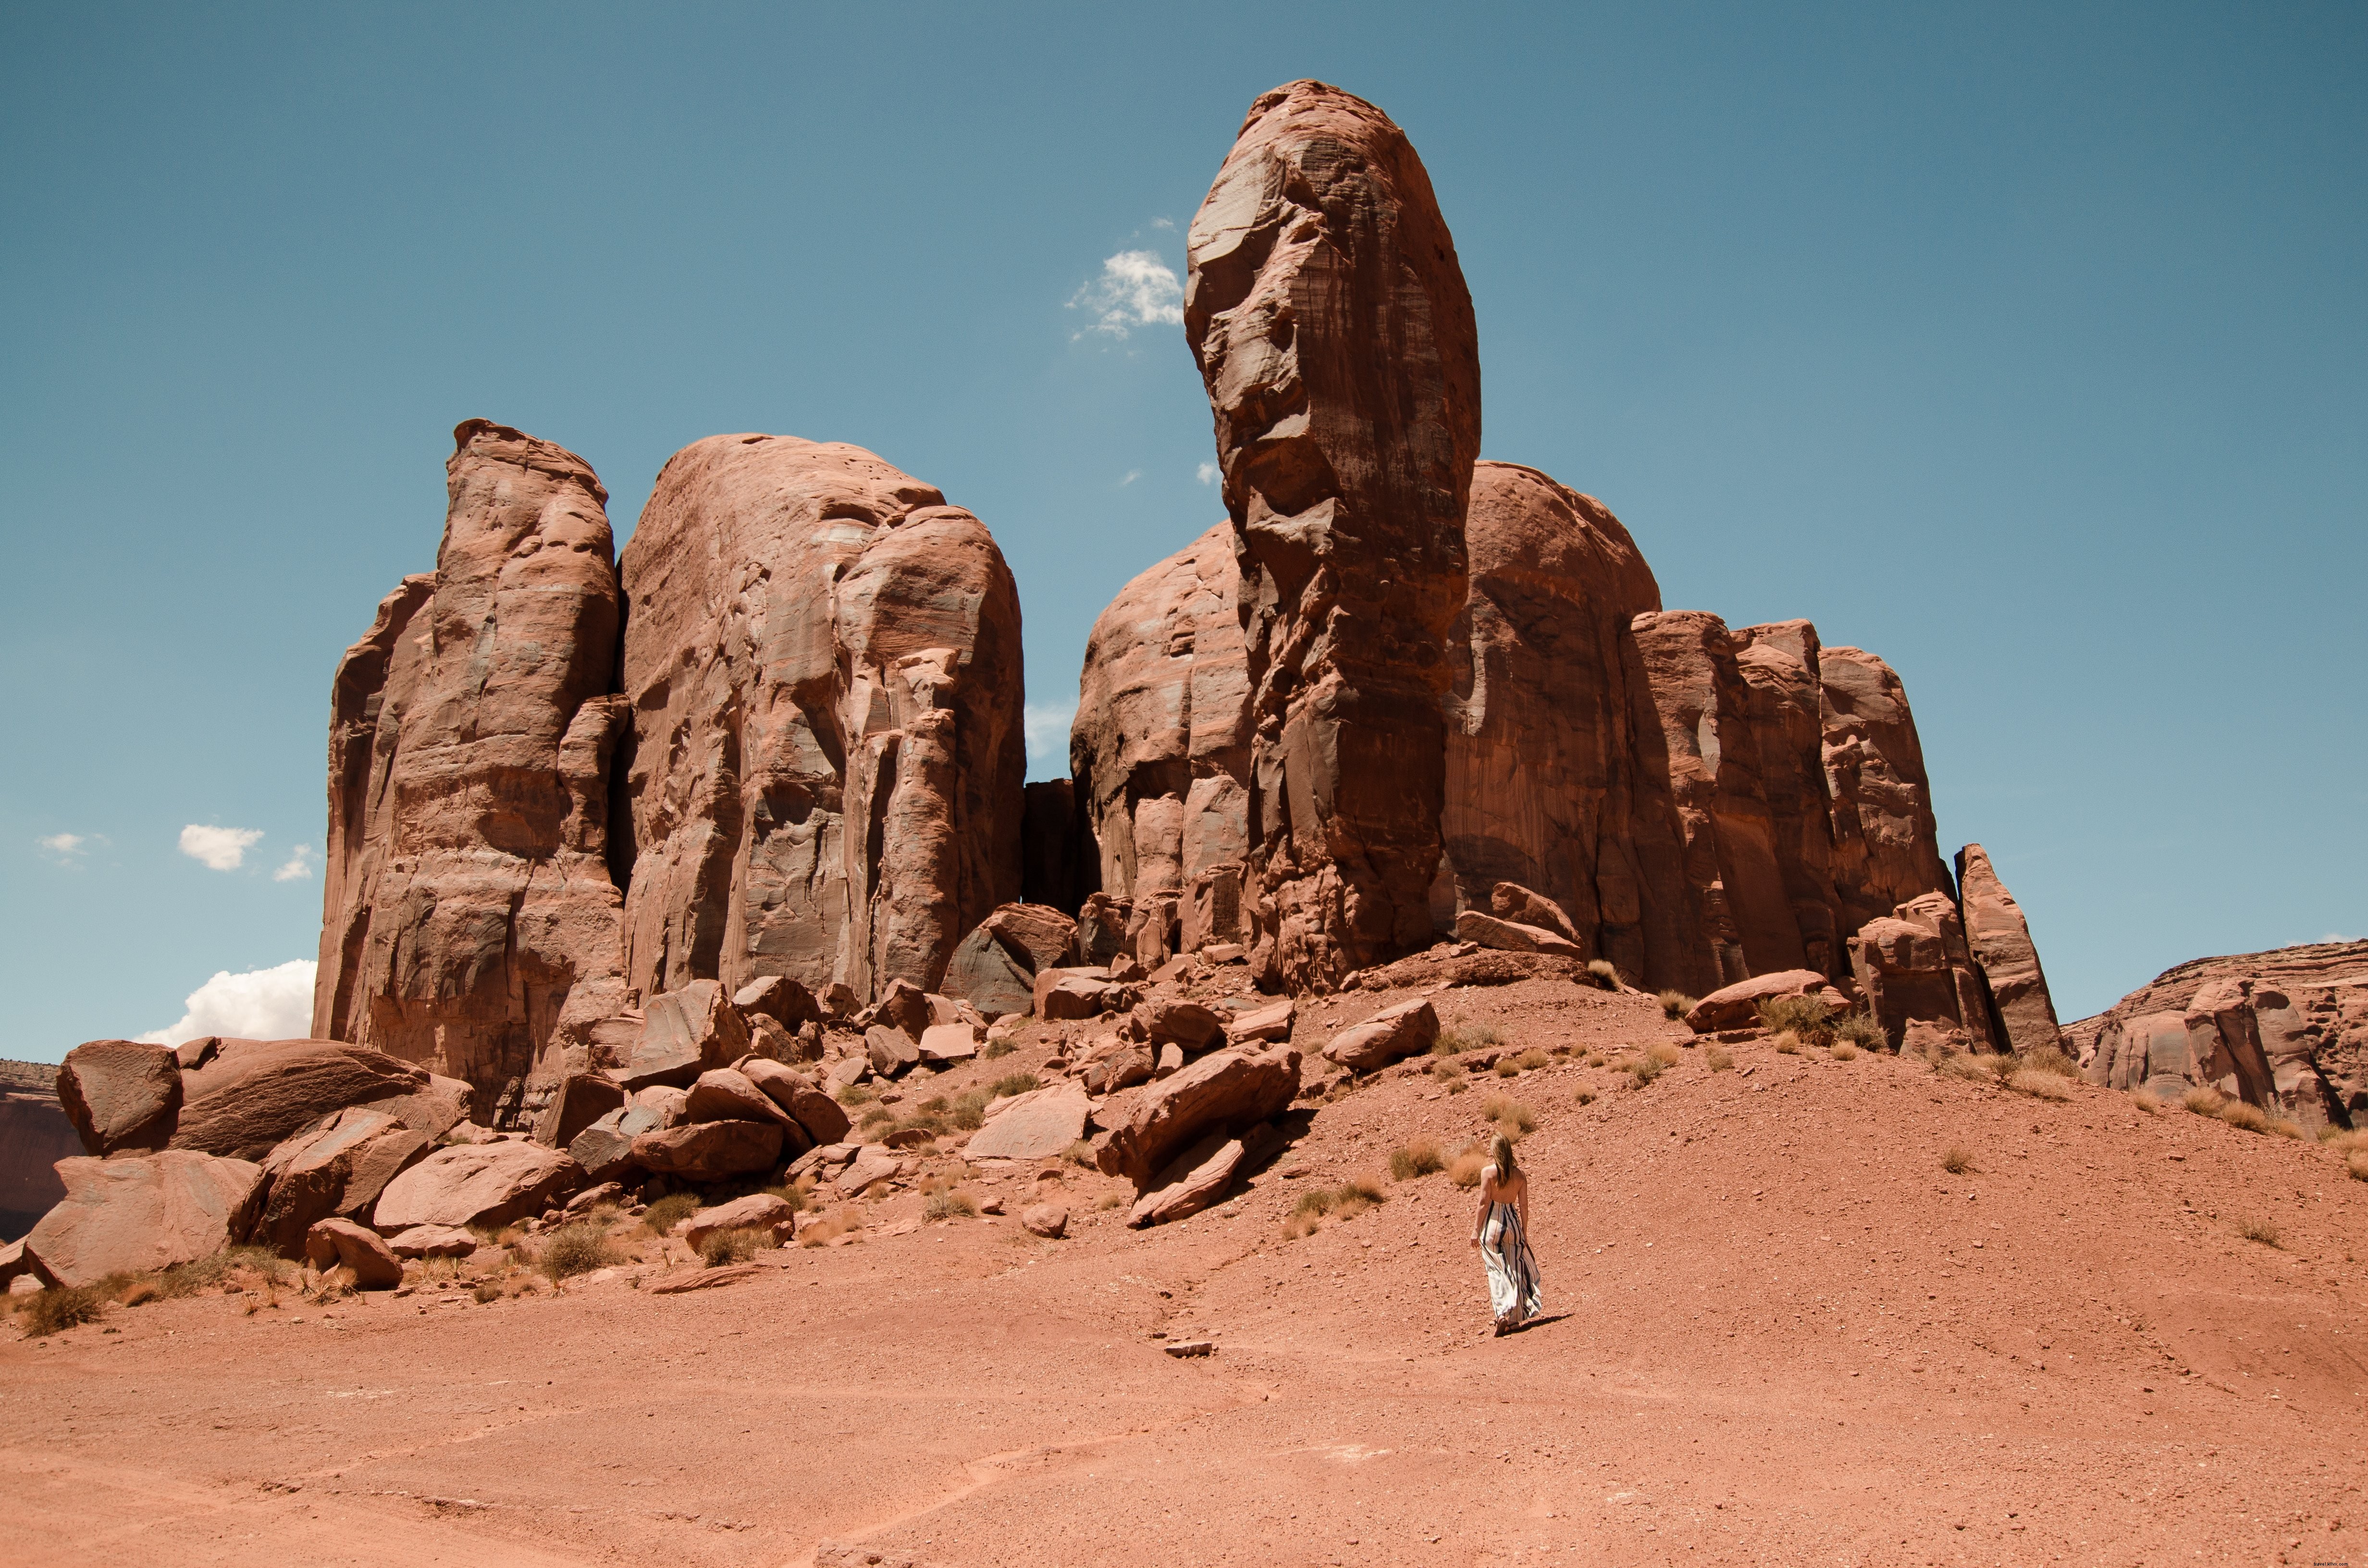 砂漠の山々のずんぐりした石の指を見上げる女性の写真